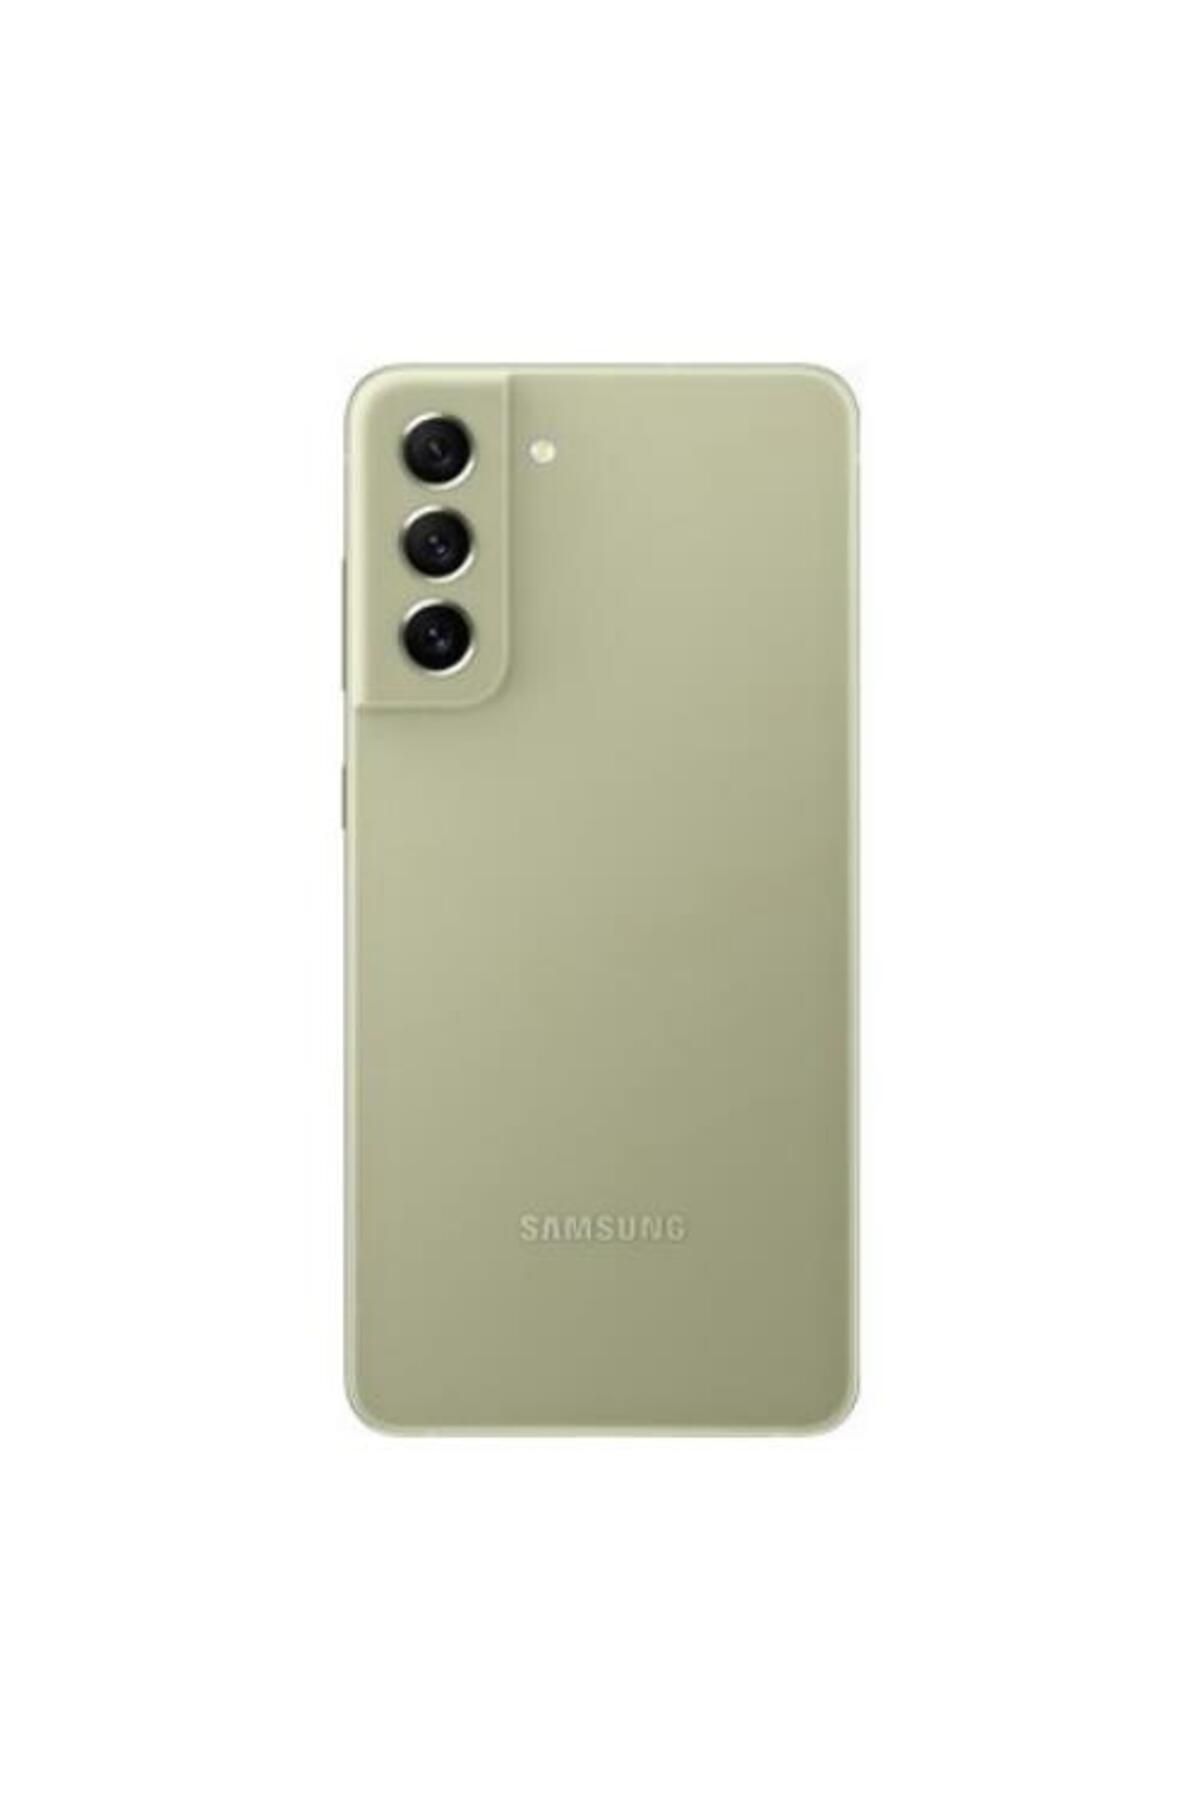 Samsung Galaxy S21 Fe Olive 128GB Yenilenmiş A Kalite (12 Ay Garantili)